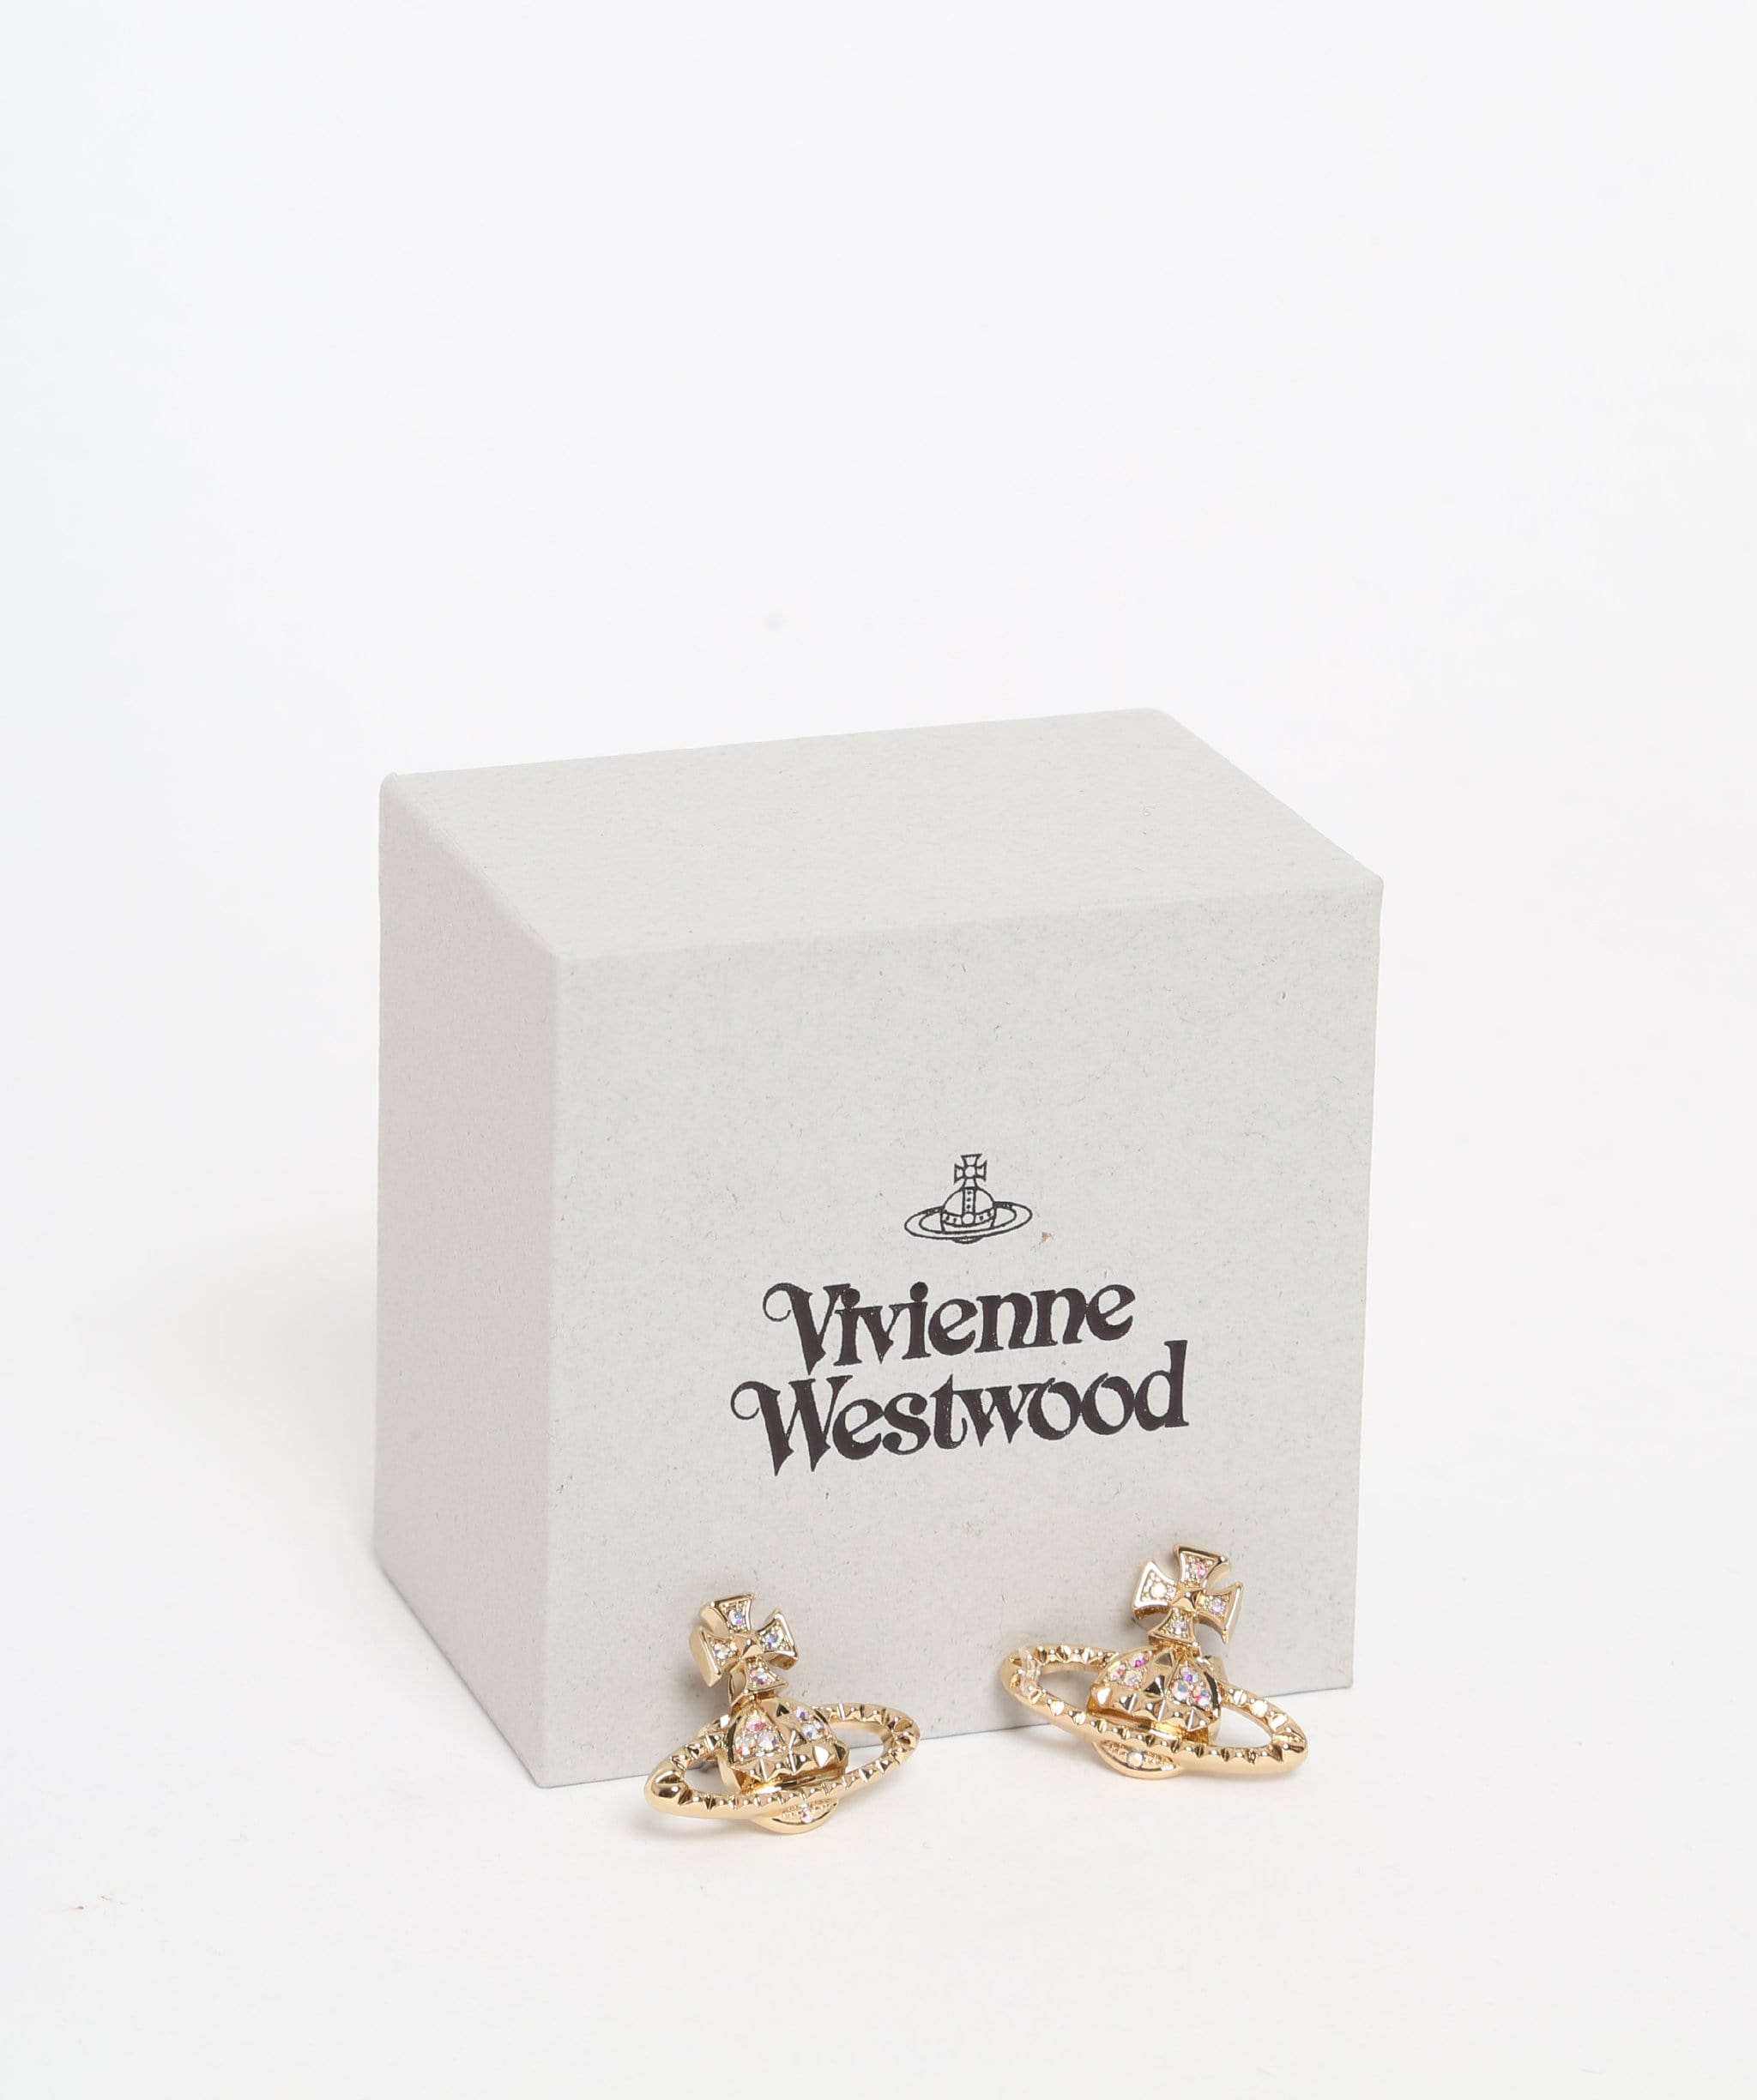 Vivienne Westwood Mayfair Bas Relief Orb Earrings Gold